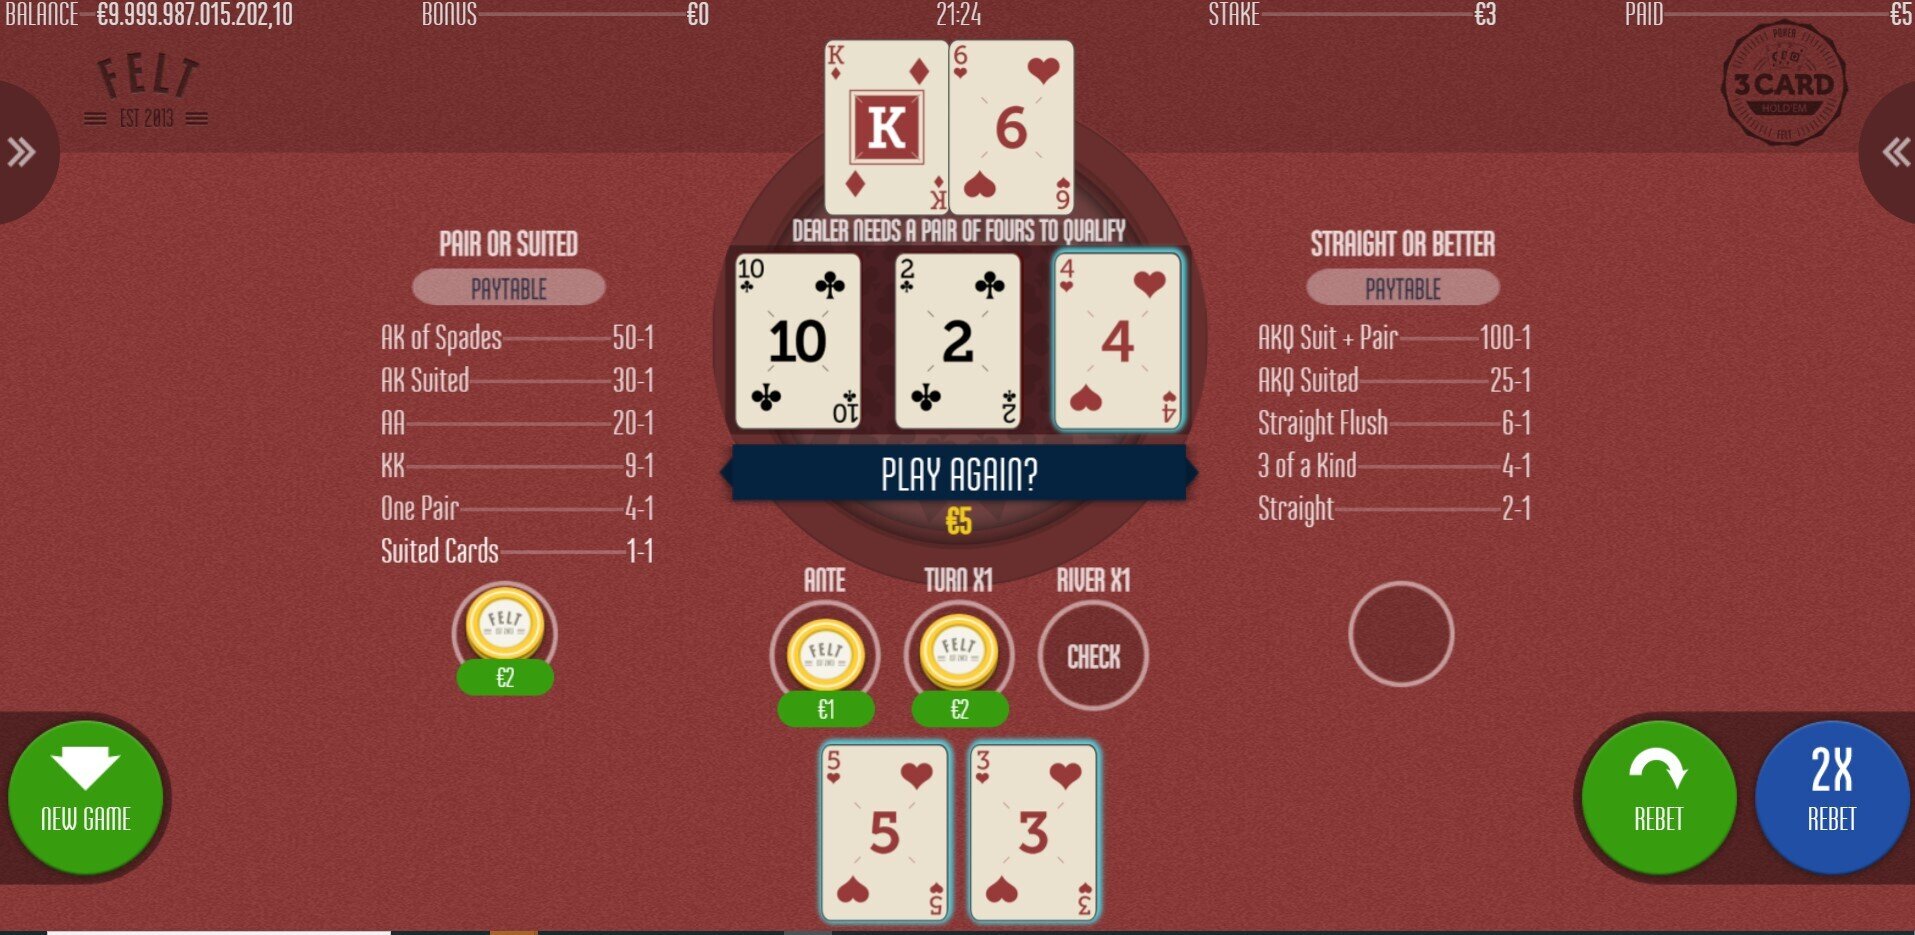 3 Card Hold'em Dealer Doesnt Qualify